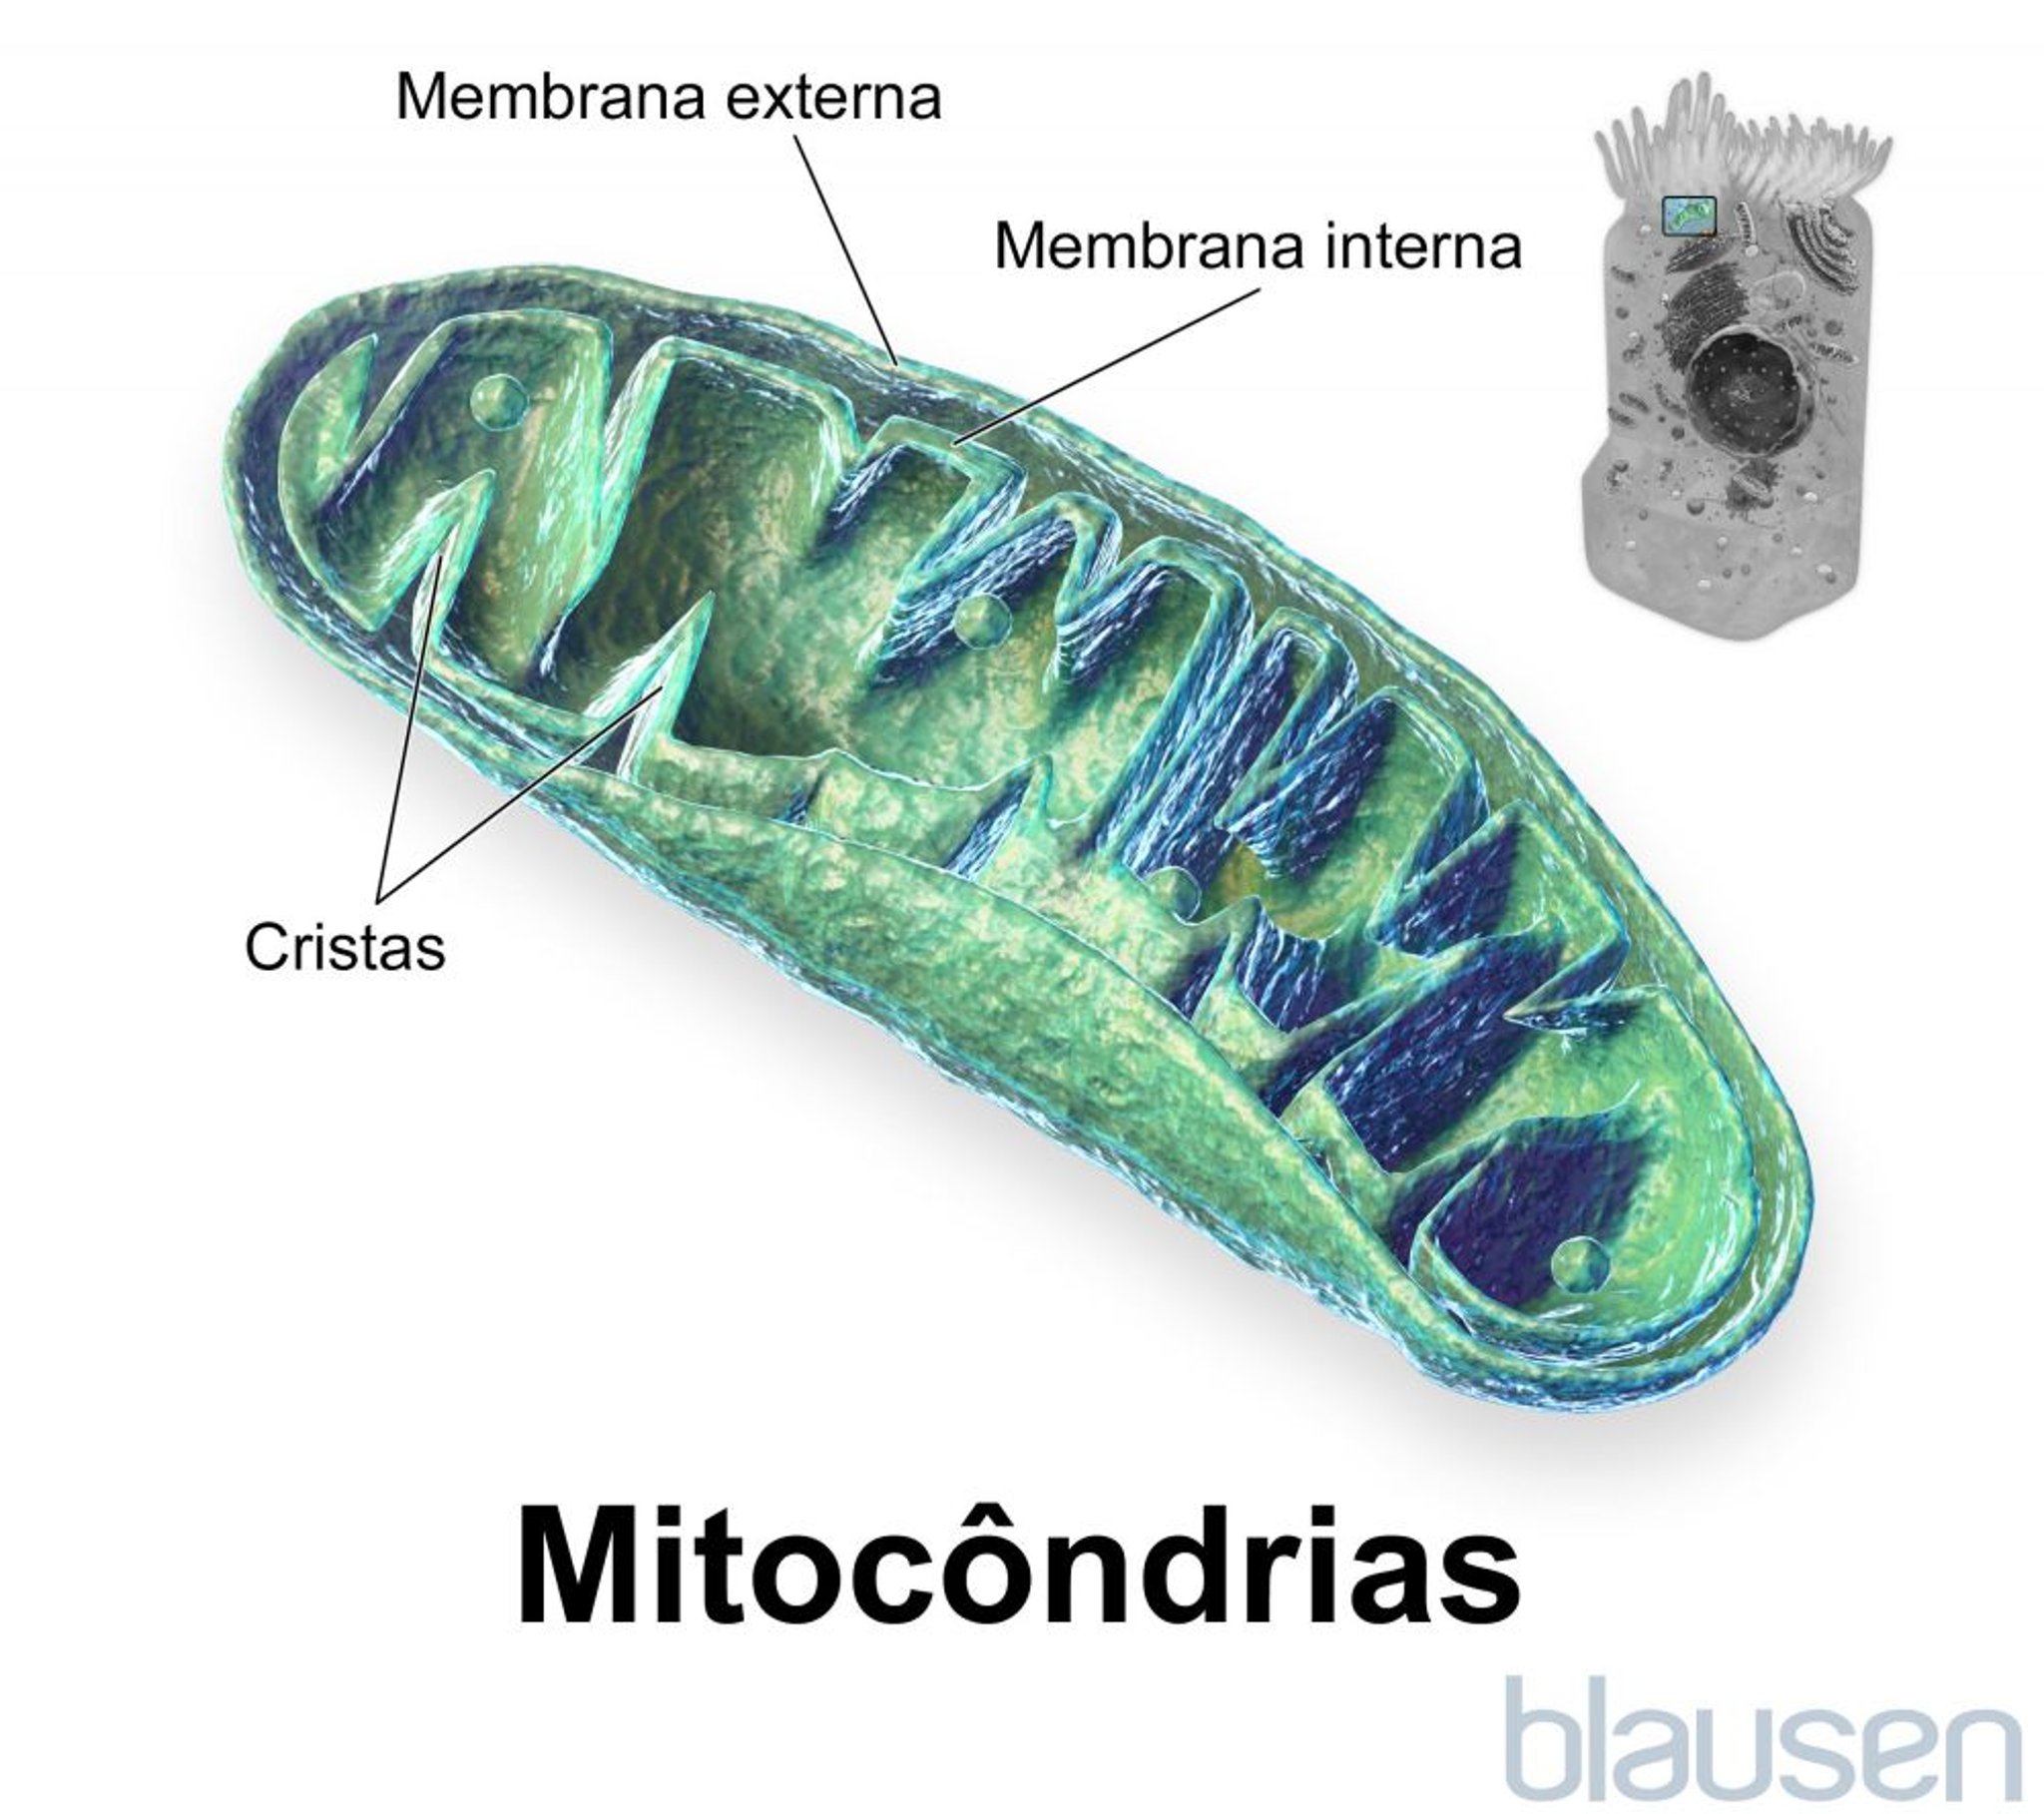 Dentro de uma mitocôndria